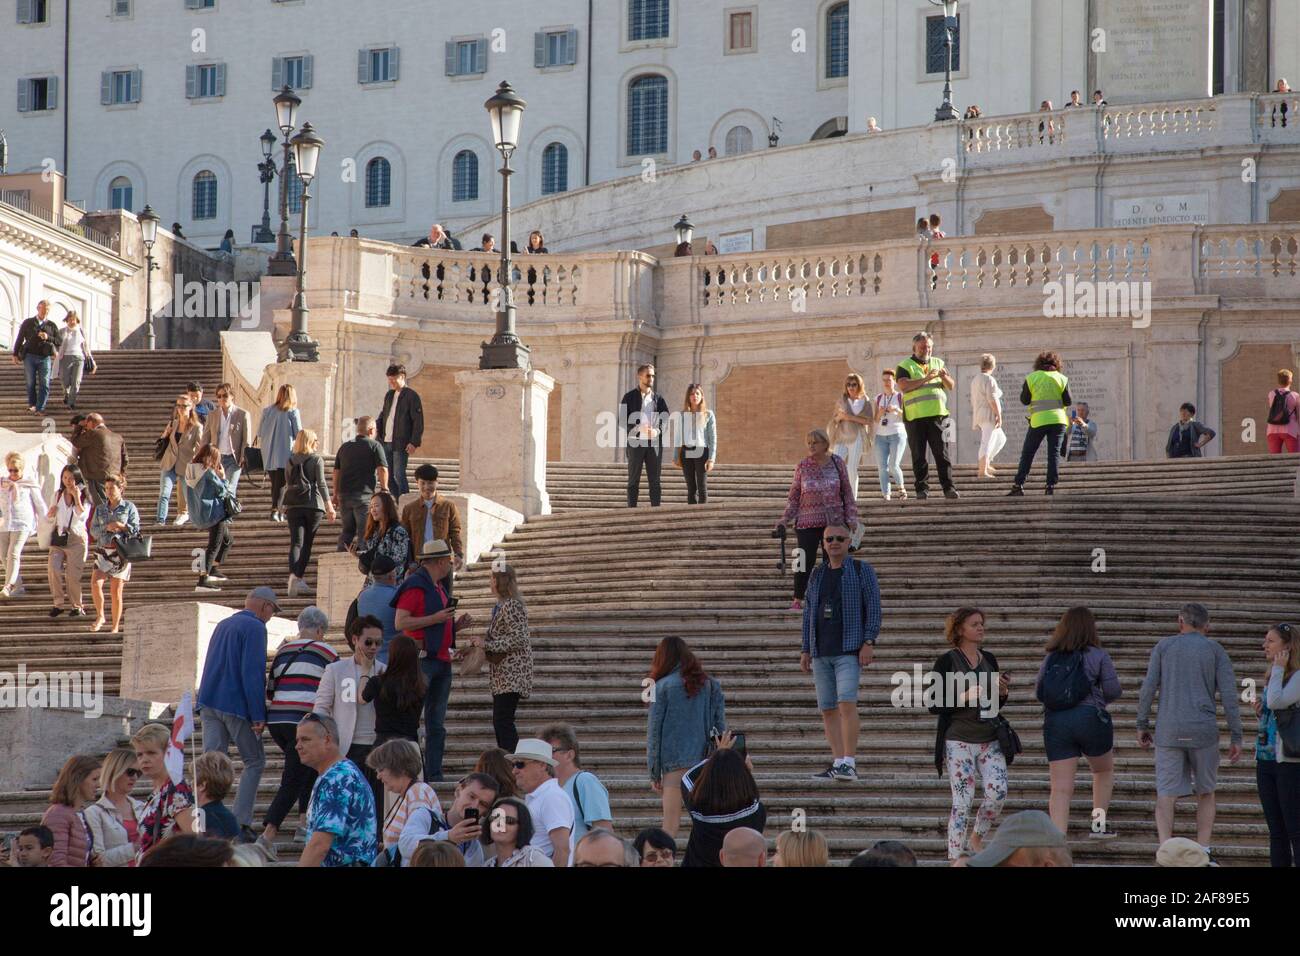 Les agents de sécurité sur la place d'Espagne à Rome s'arrêter les touristes de s'asseoir pour éviter la congestion autour d'une attraction populaire Banque D'Images